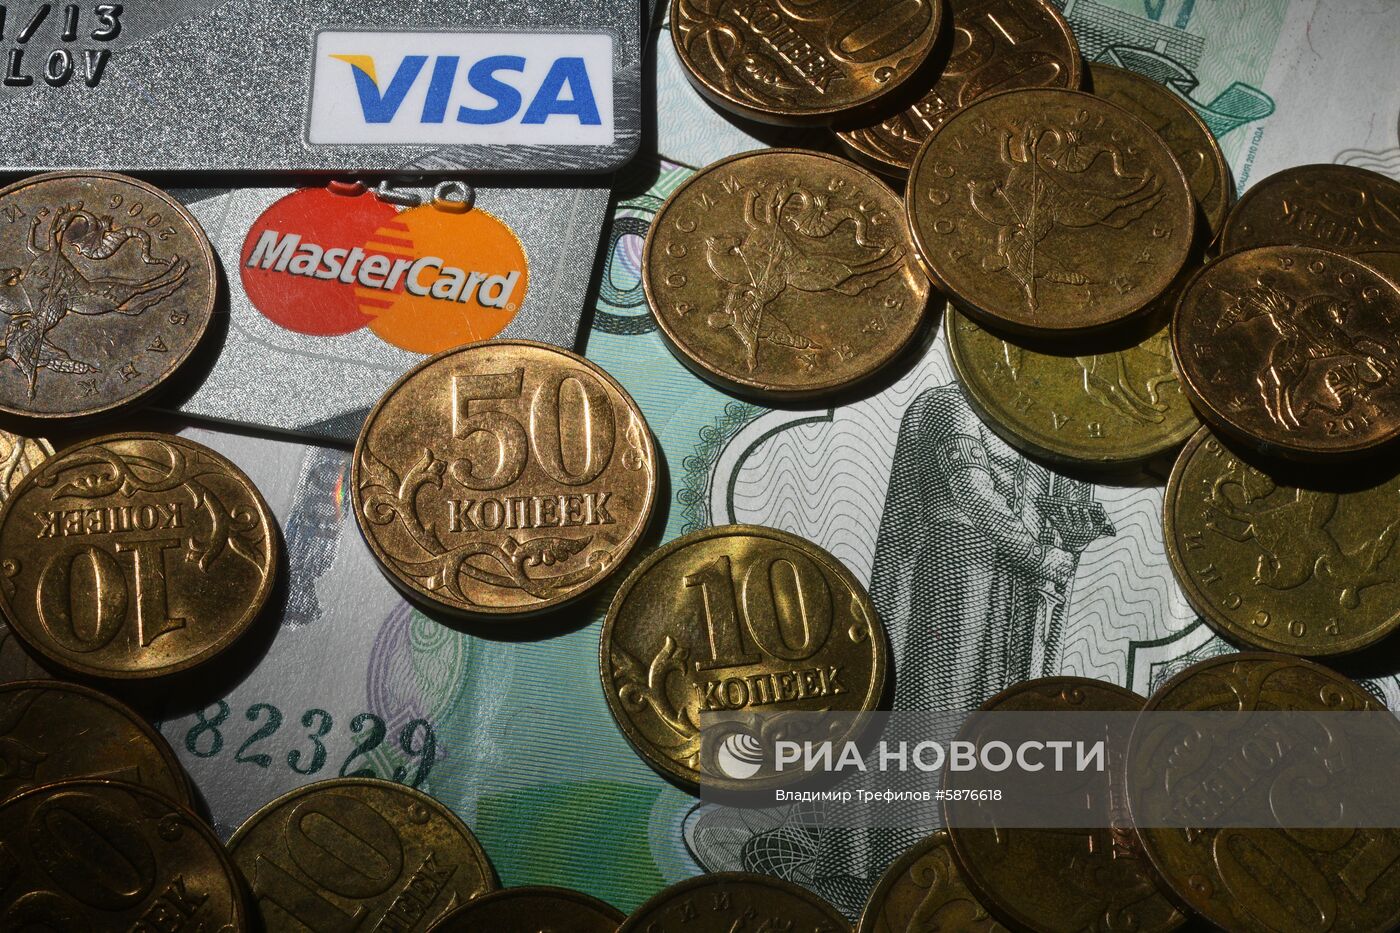 Центробанк перестал выпускать в обращение монеты номиналом ниже рубля